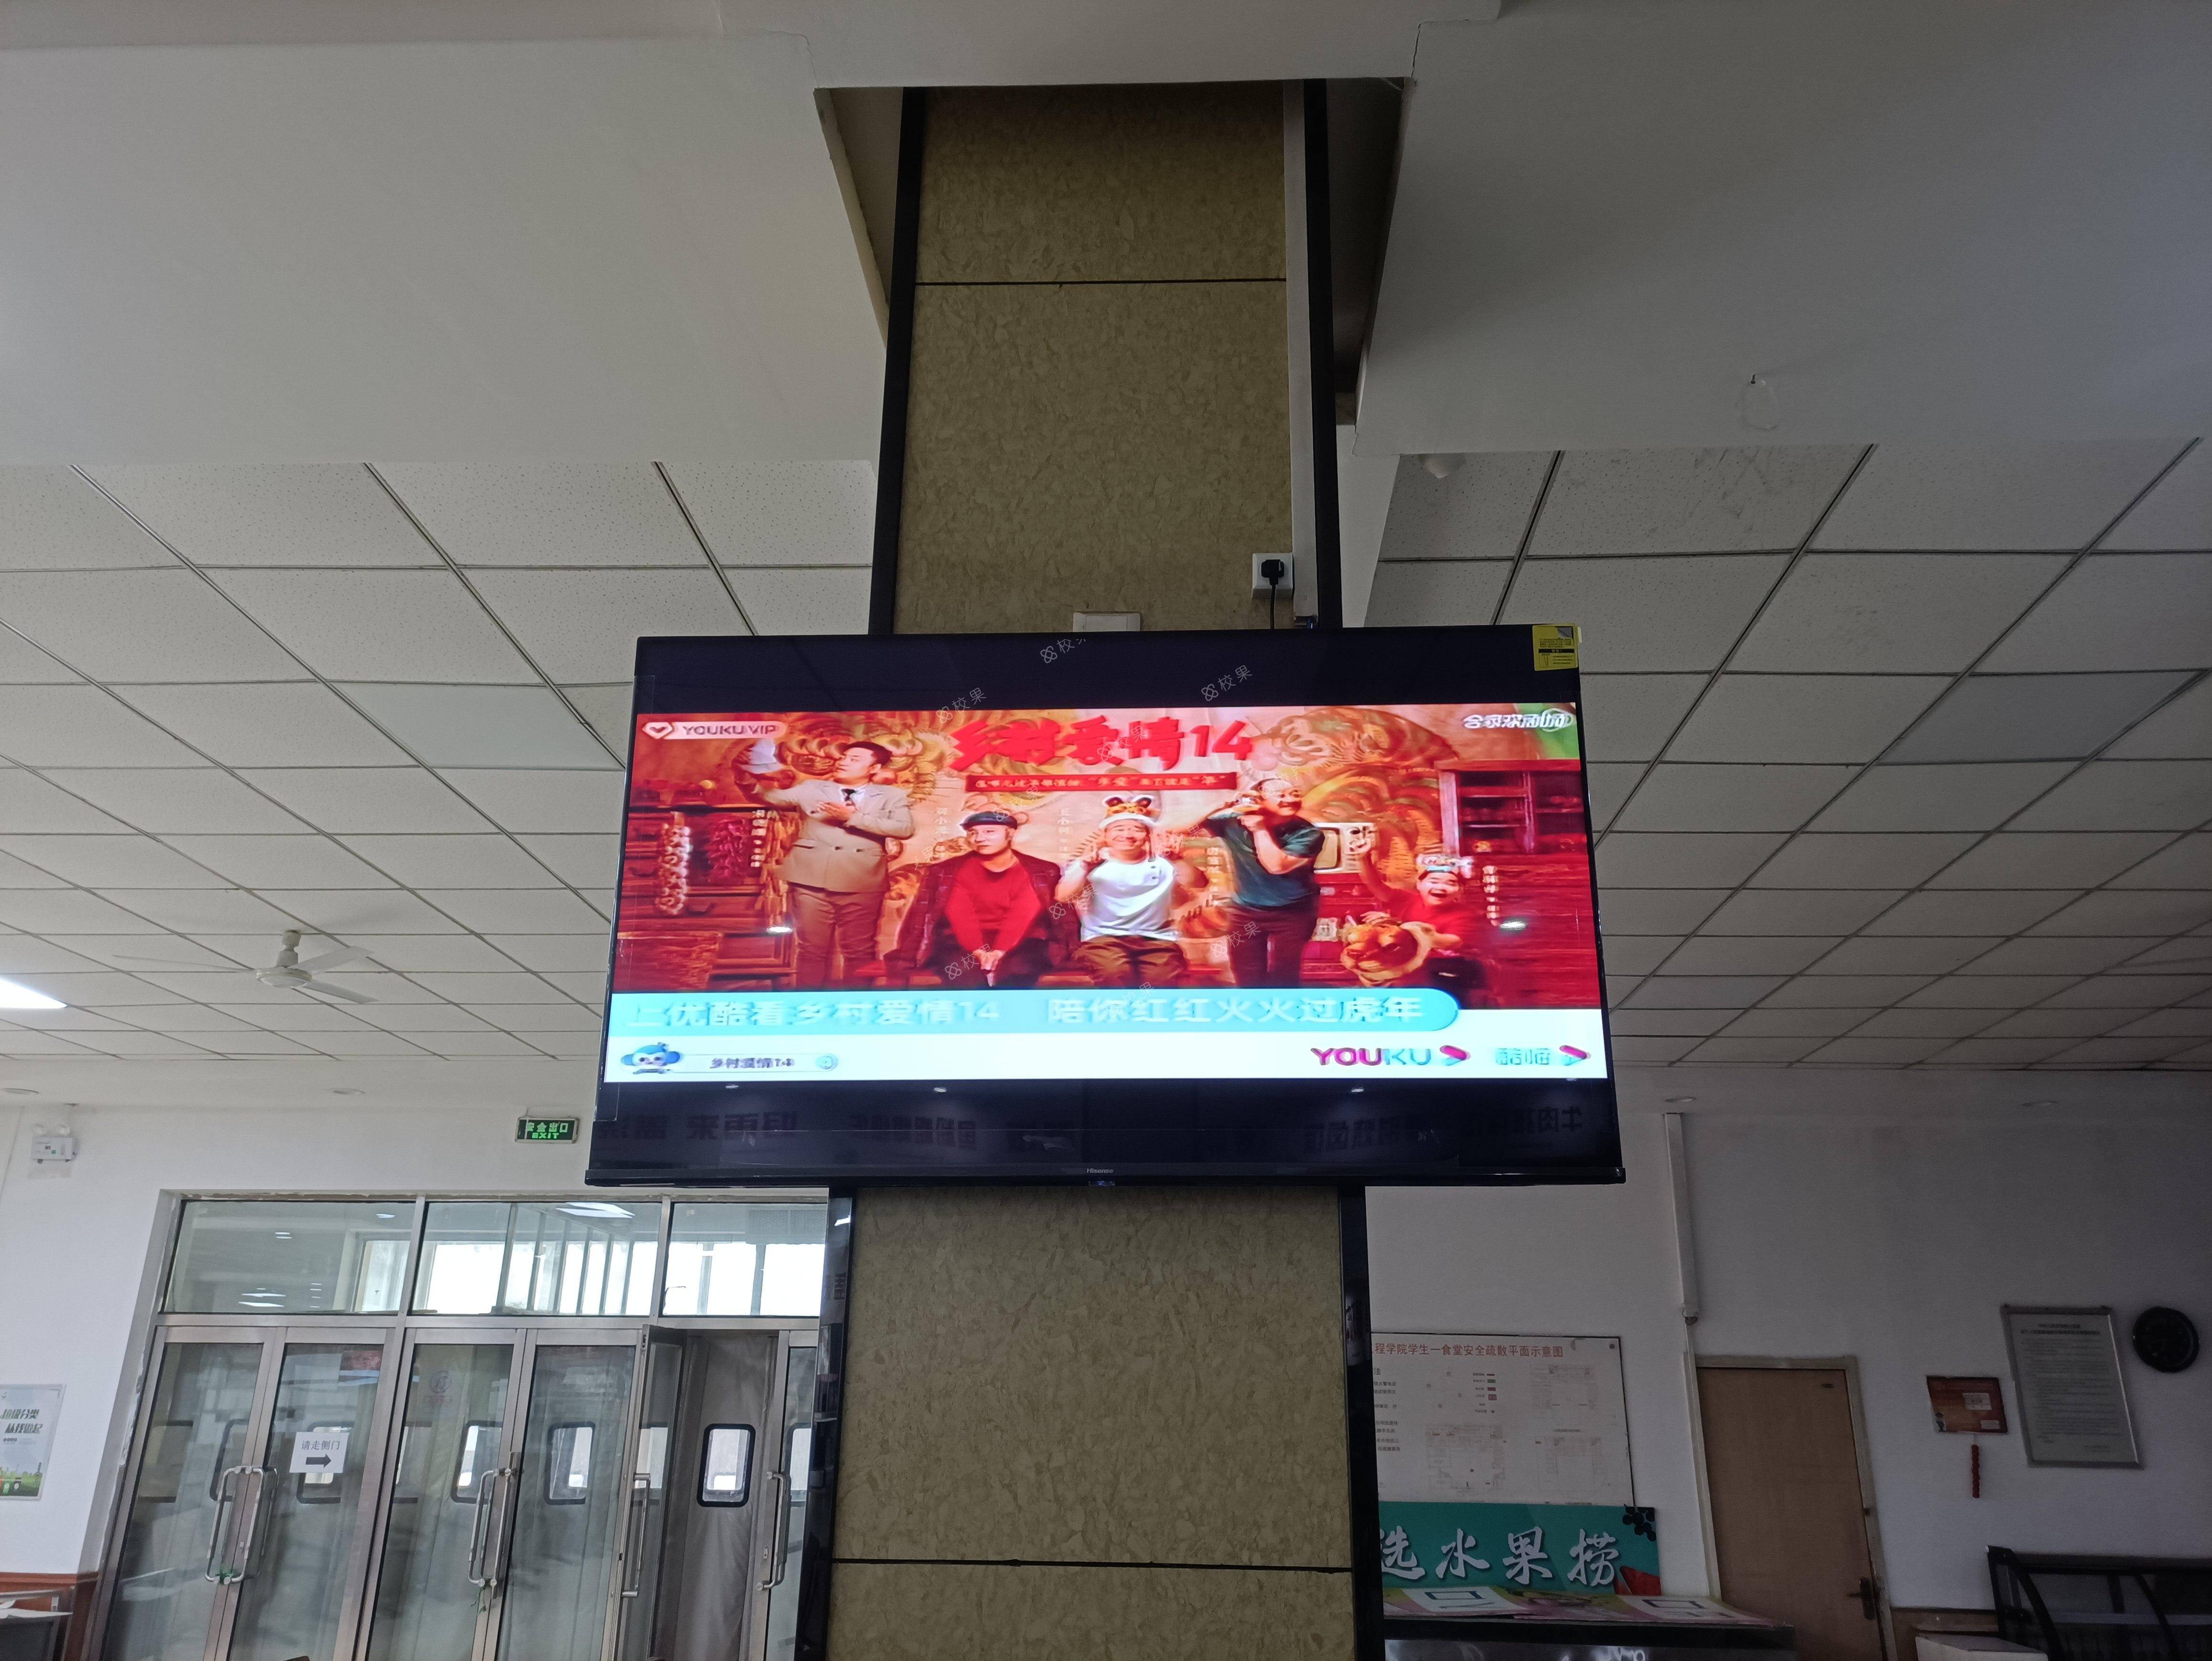 液晶屏广告 北京大学深圳研究生院